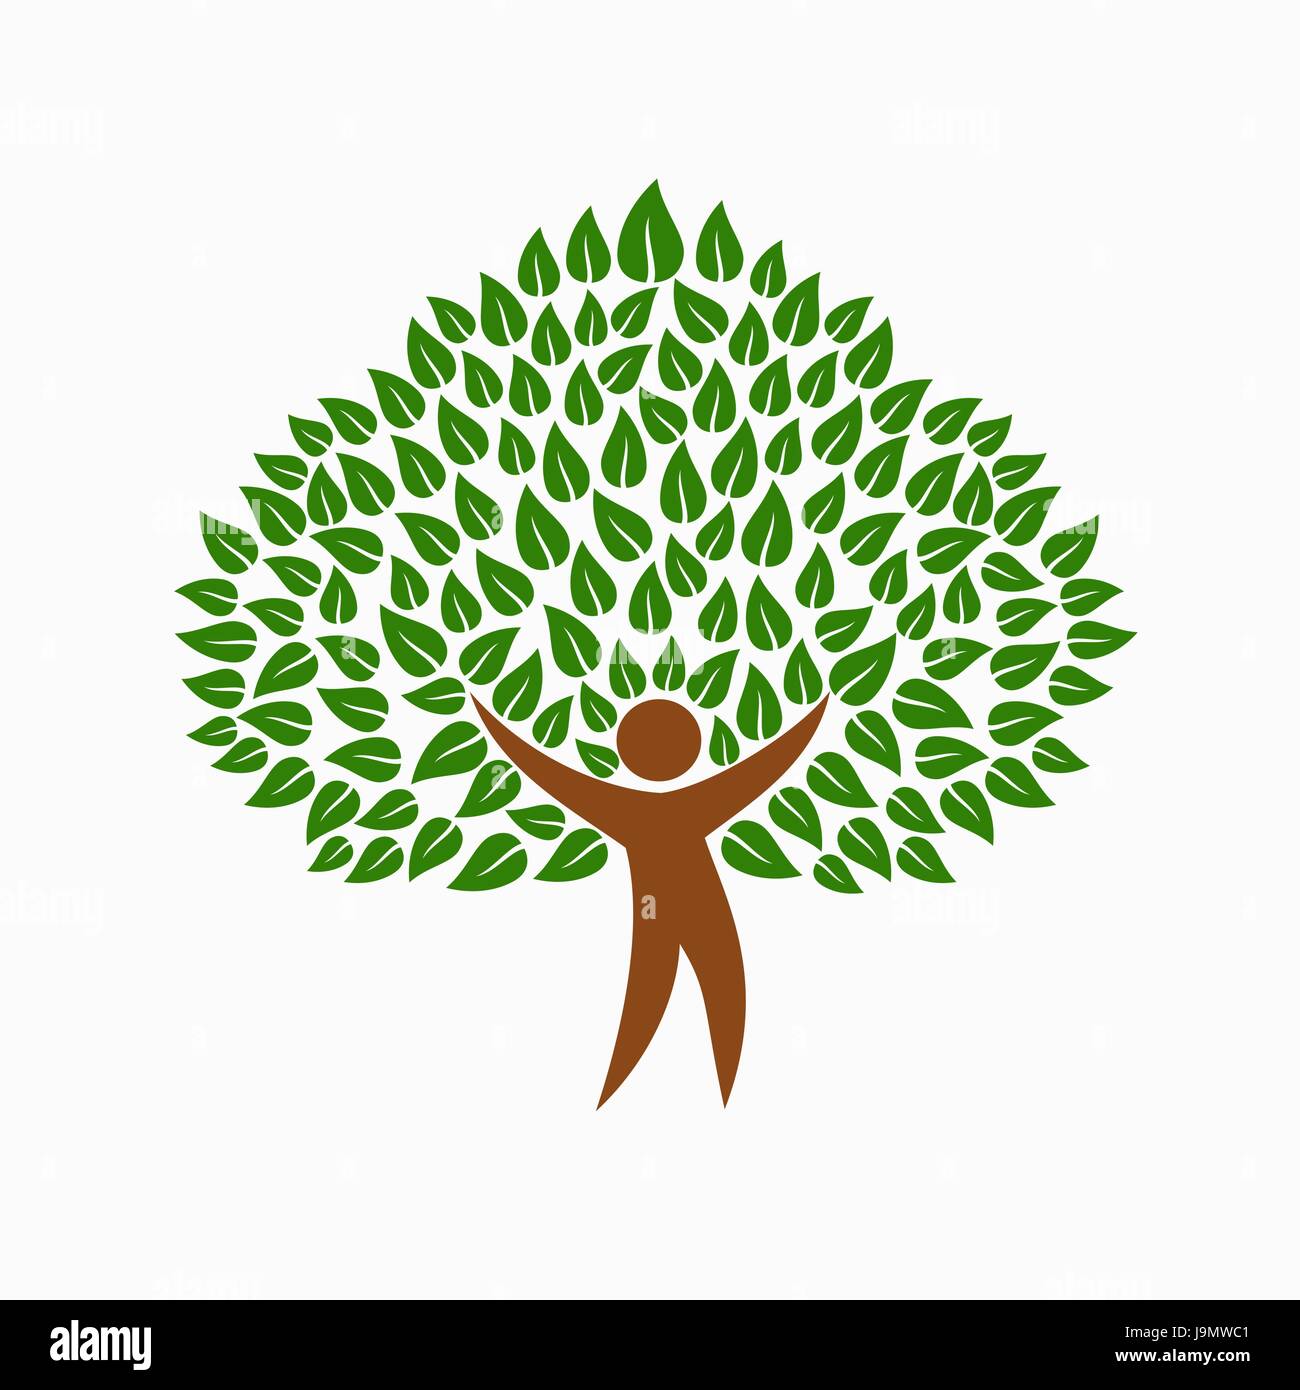 Grüner Baum-Symbol mit menschliche Silhouette. Konzept-Illustration für Umwelt Hilfe Projekt oder Natur Pflege. EPS10 Vektor. Stock Vektor